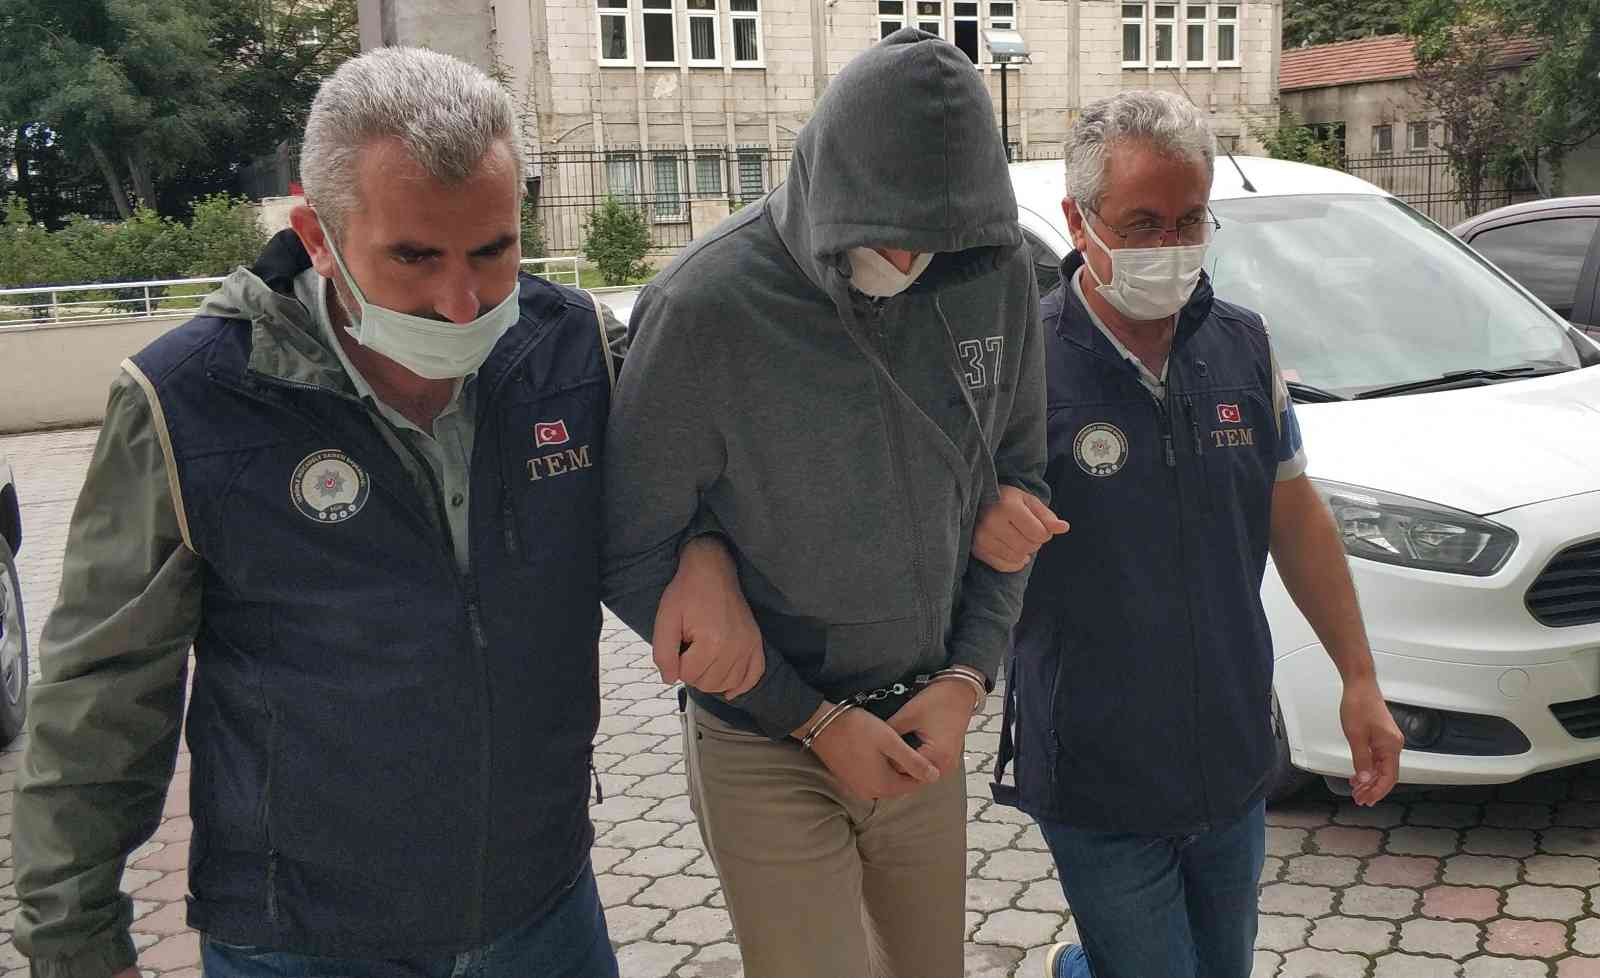 FETÖ soruşturmasında 6 şüpheliden 1’i tutuklandı #denizli